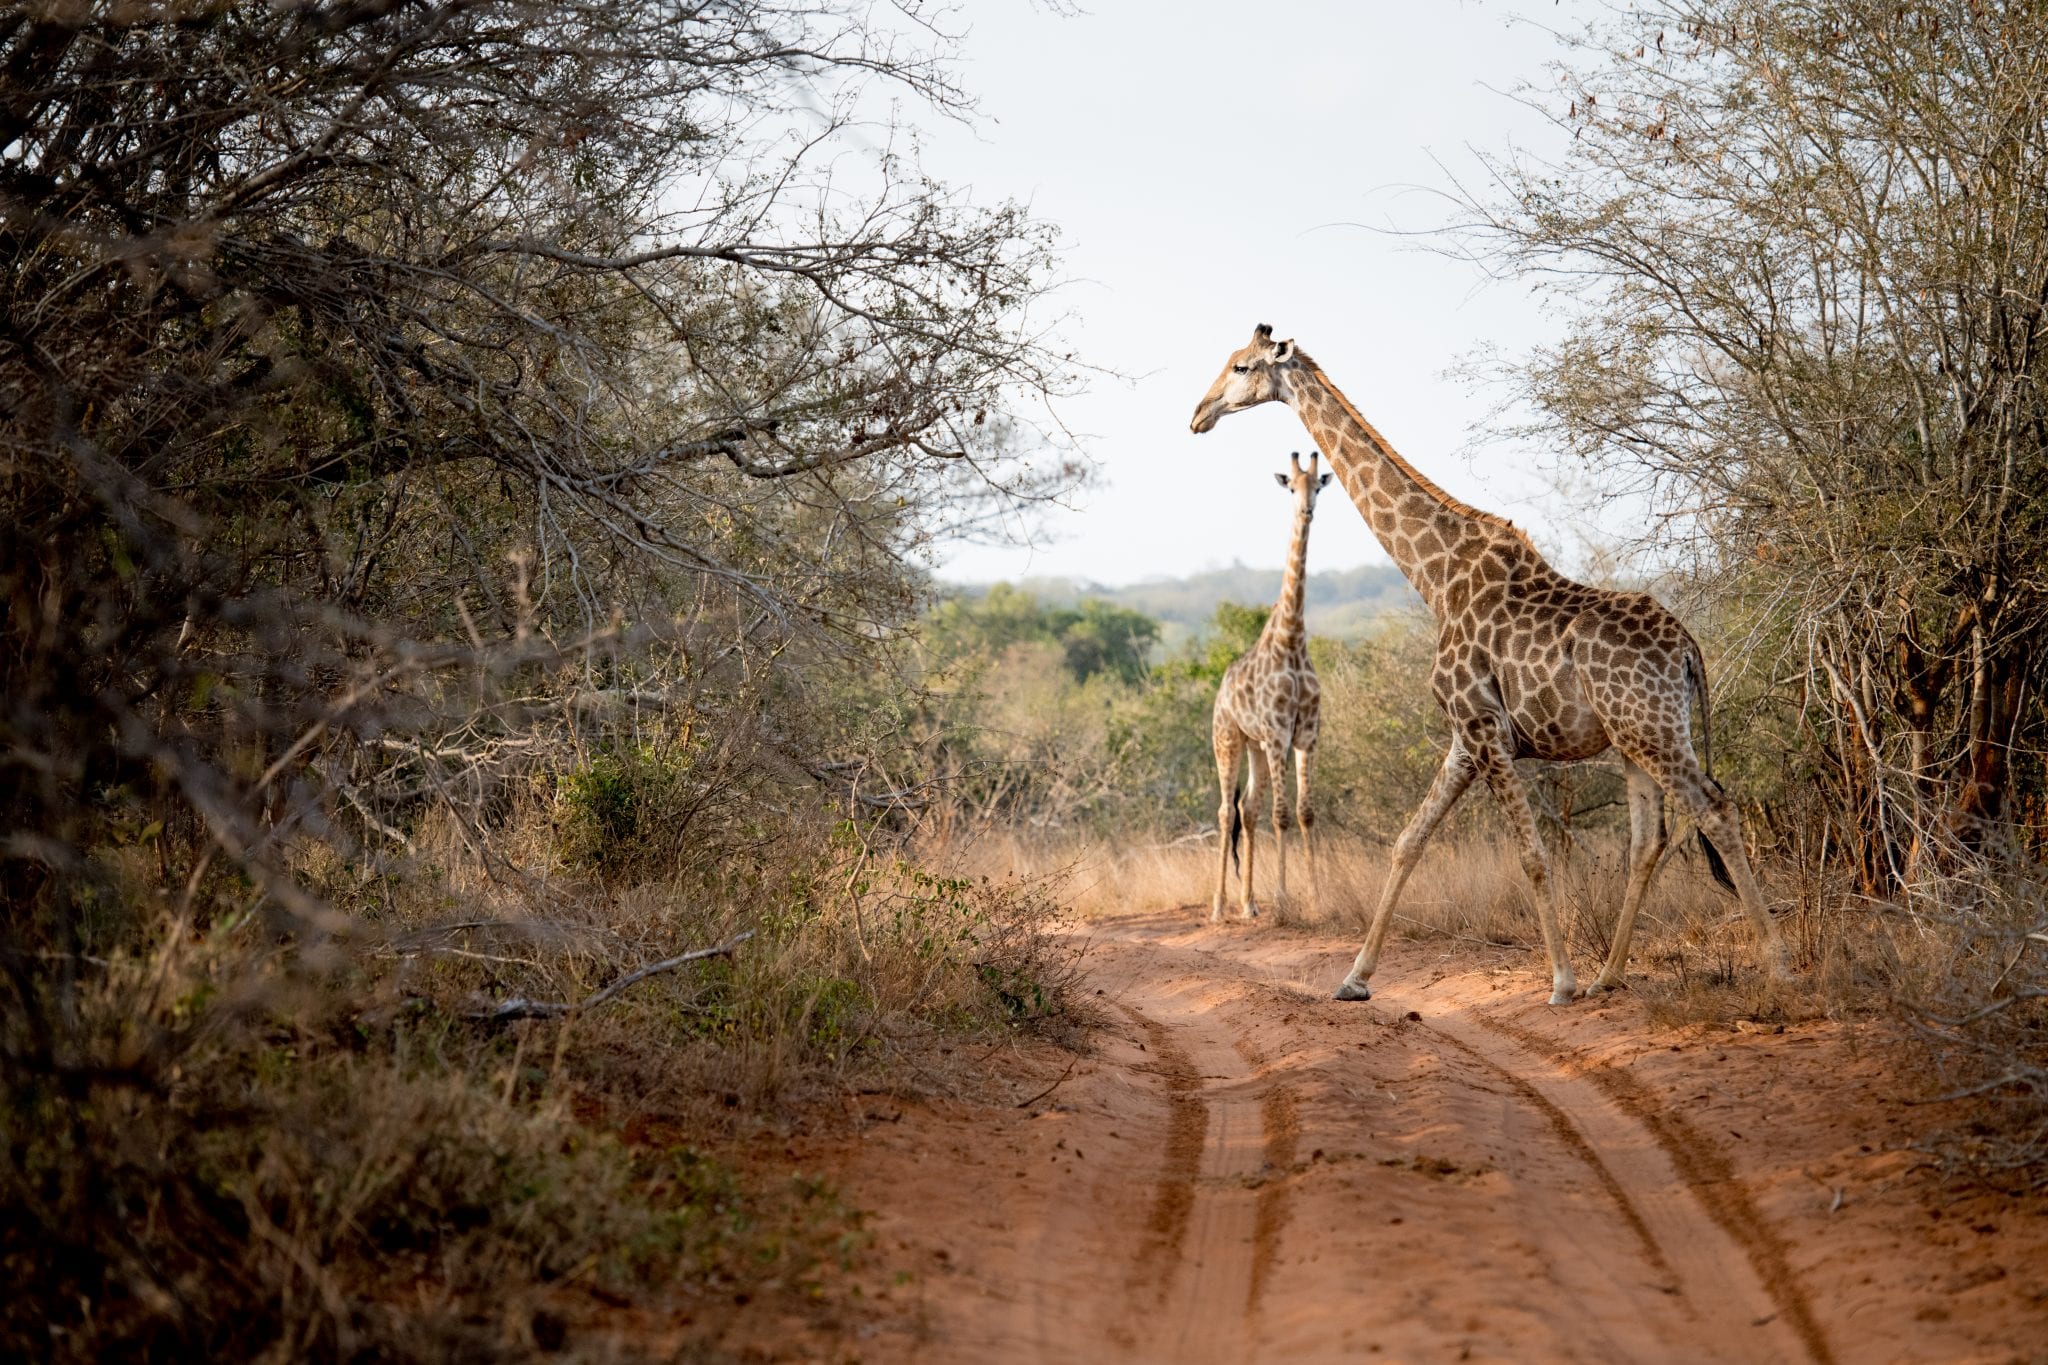 singita-pamushana-lodge-giraffes.jpg